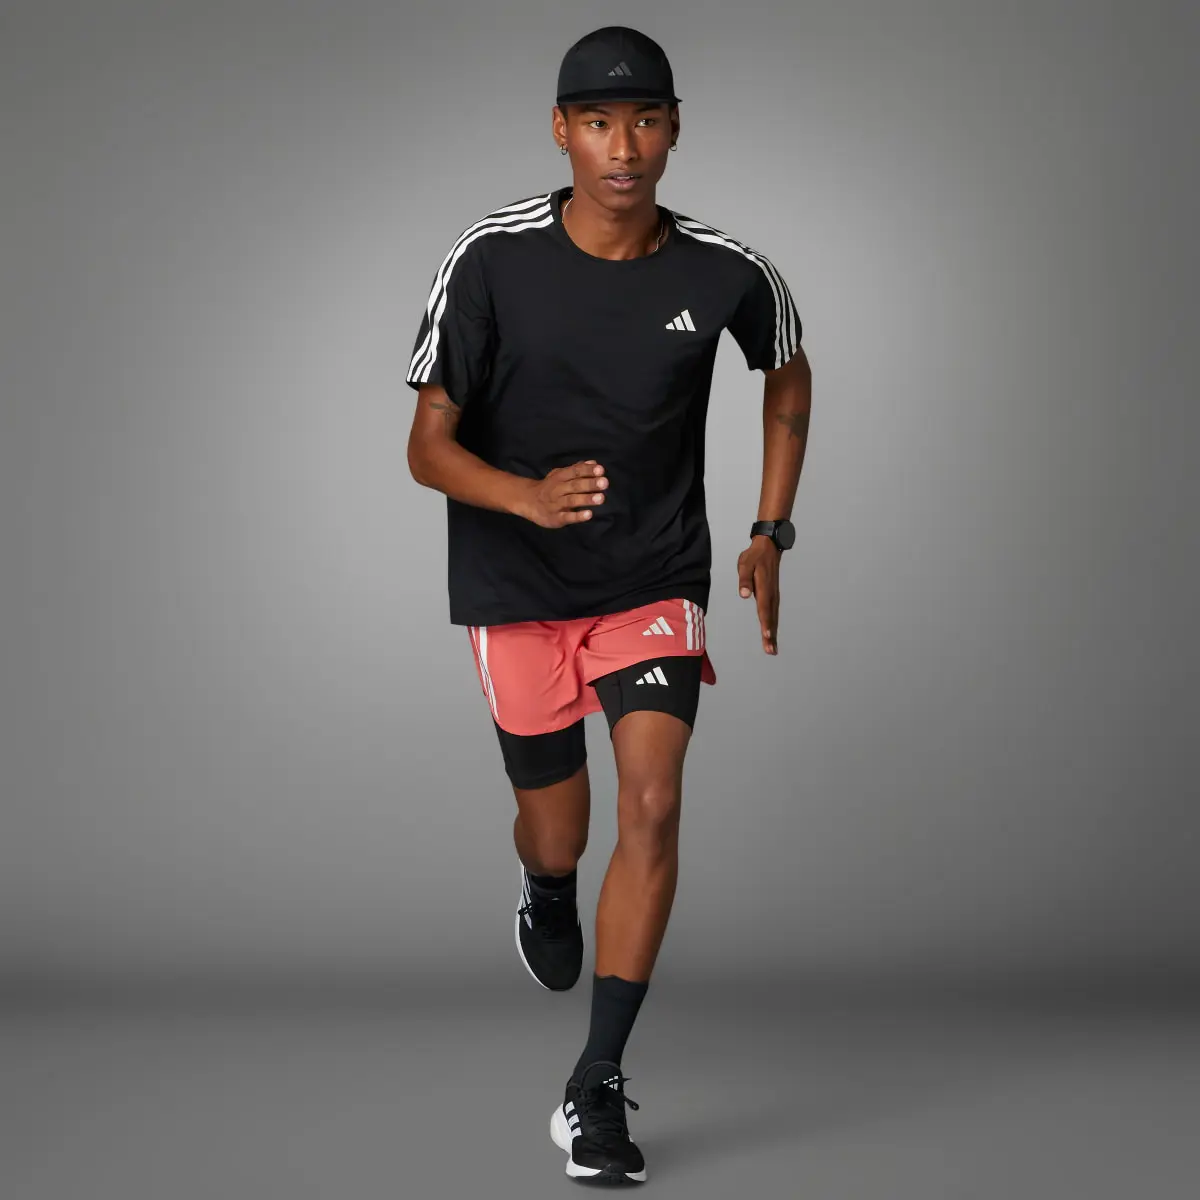 Adidas Own the Run 3-Stripes Tee. 3